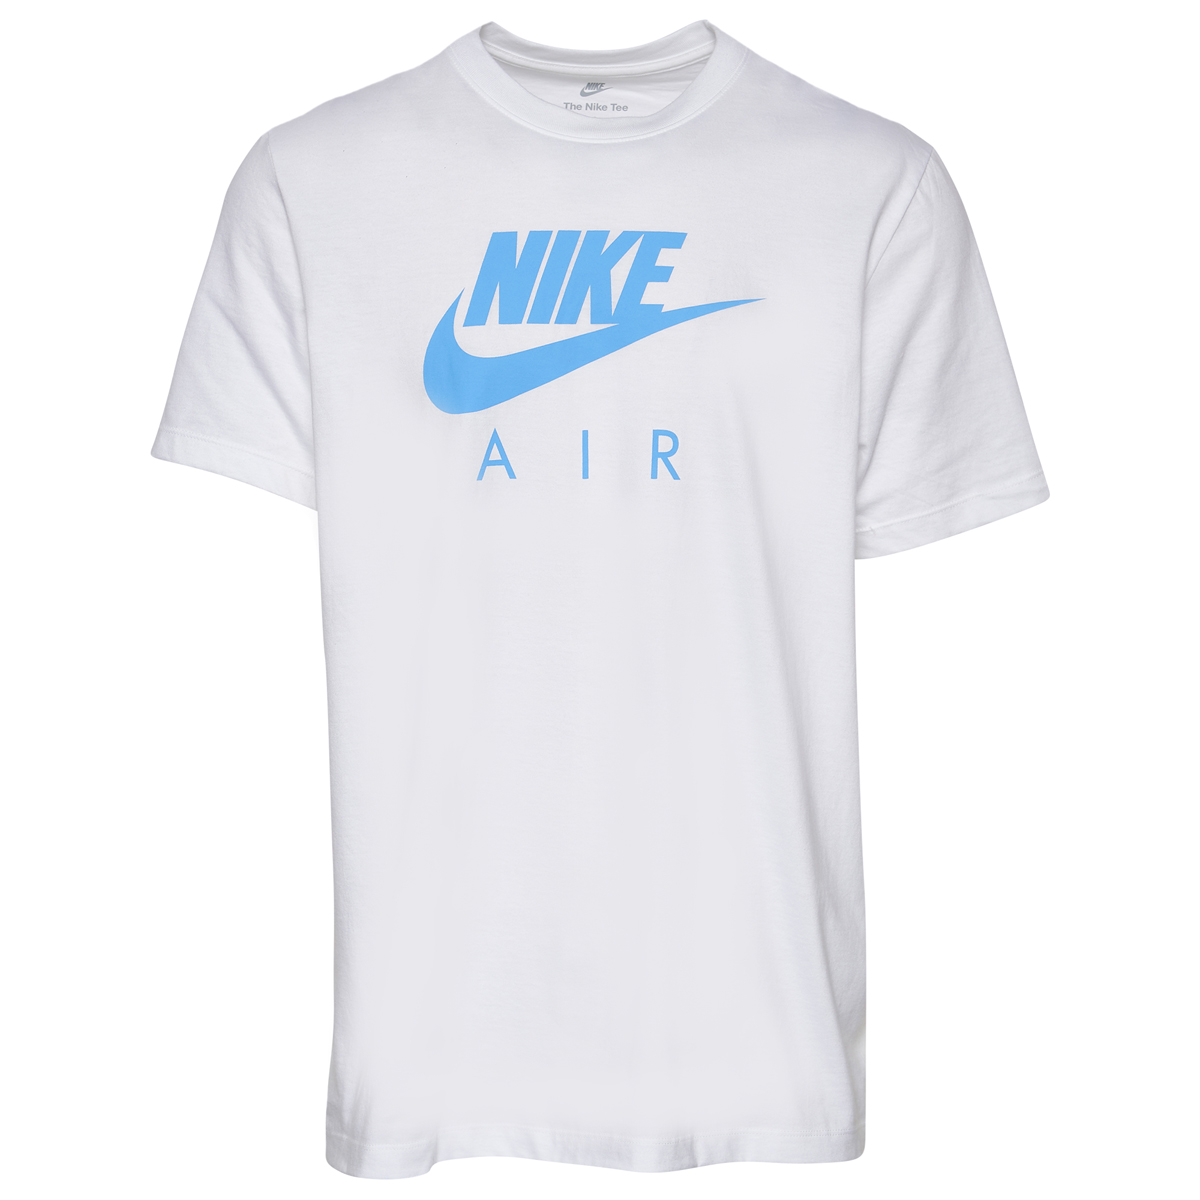 Nike-Air-T-Shirt-White-Carolina-Blue